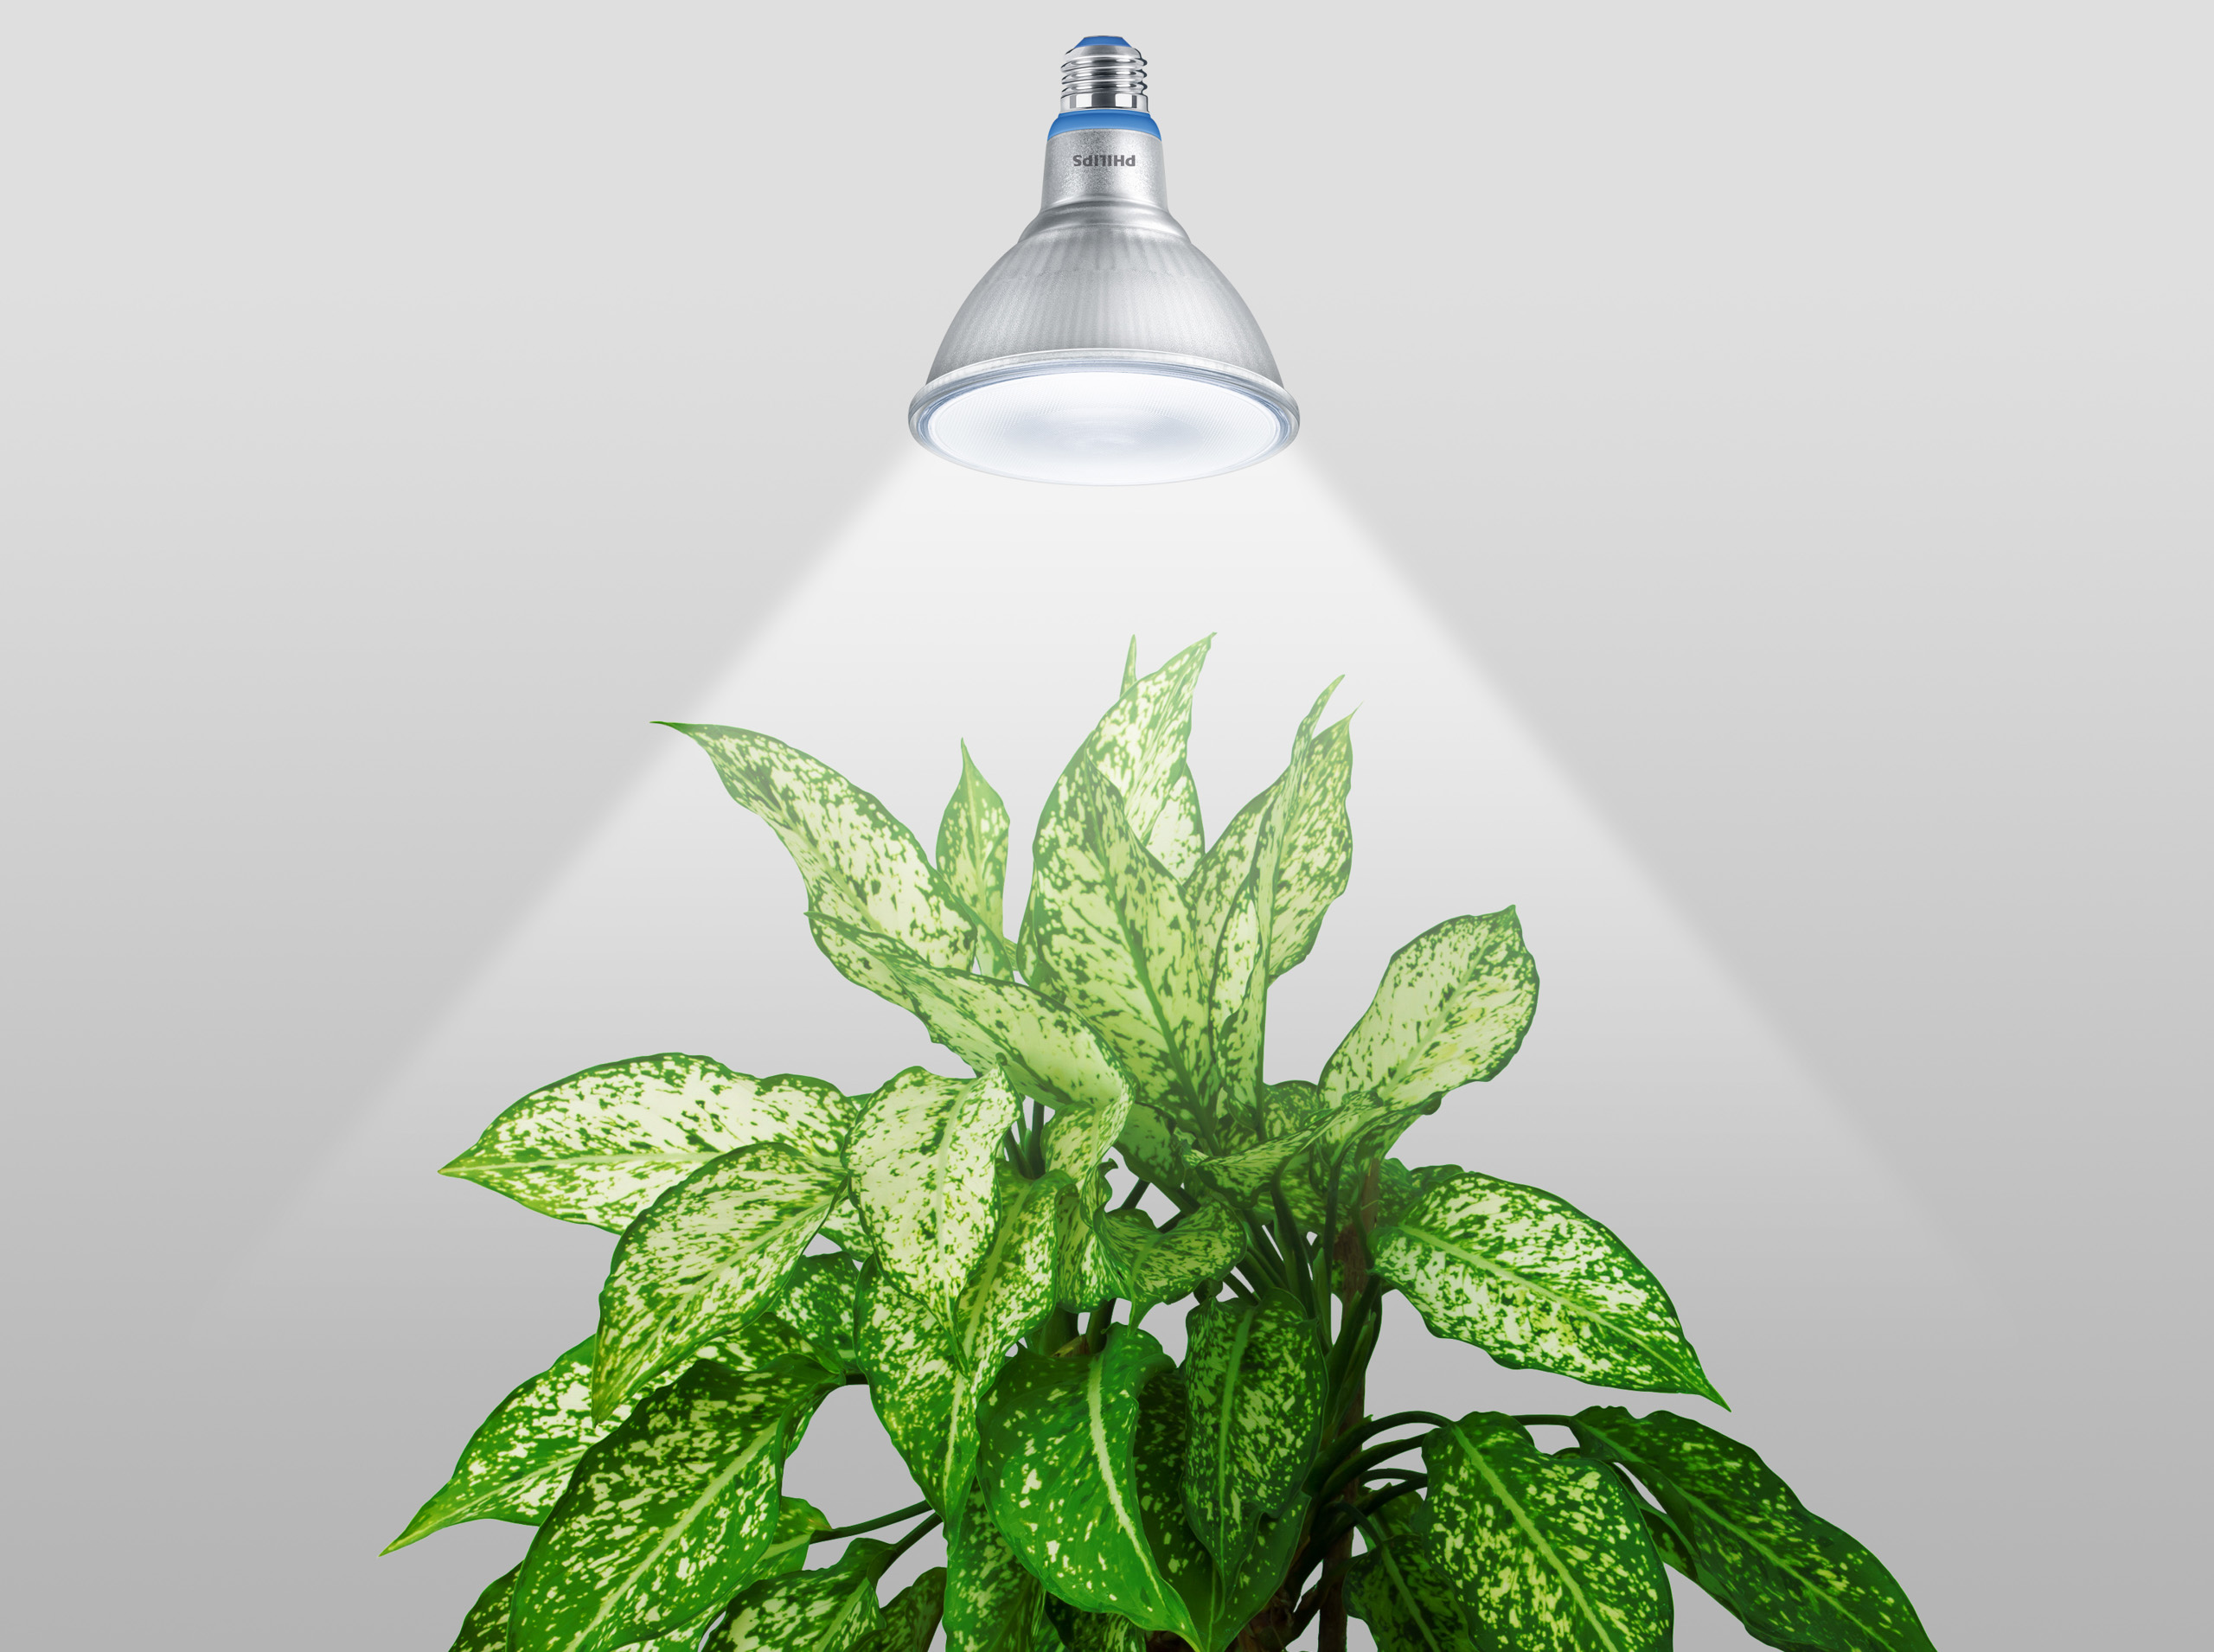 Signify ứng dụng công nghệ ánh sáng hỗ trợ phương pháp trồng cây xanh trong nhà